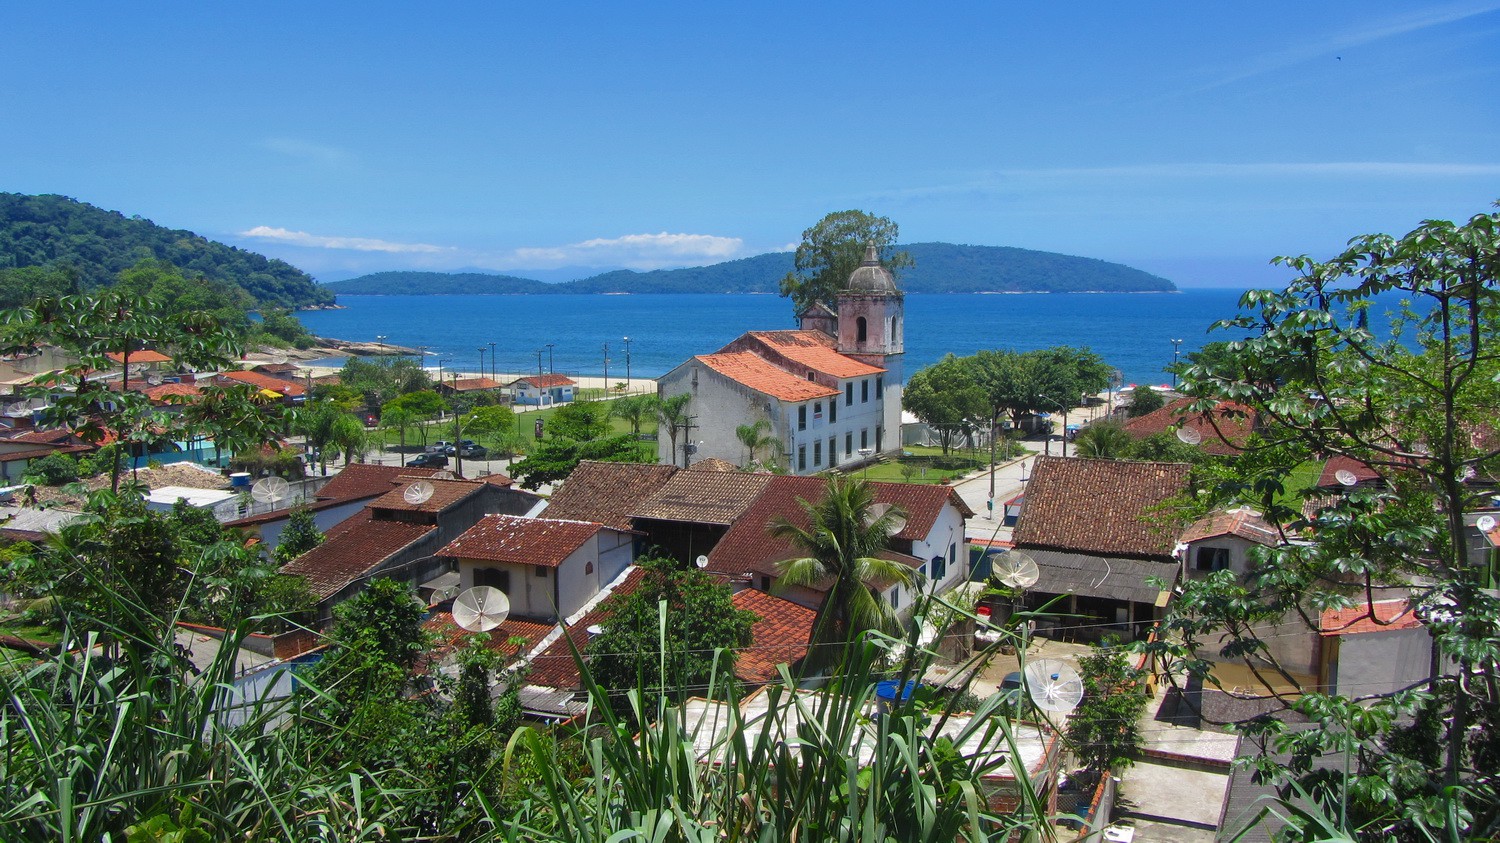 Picturesque village﻿﻿ in the Baia de Ilha Grande